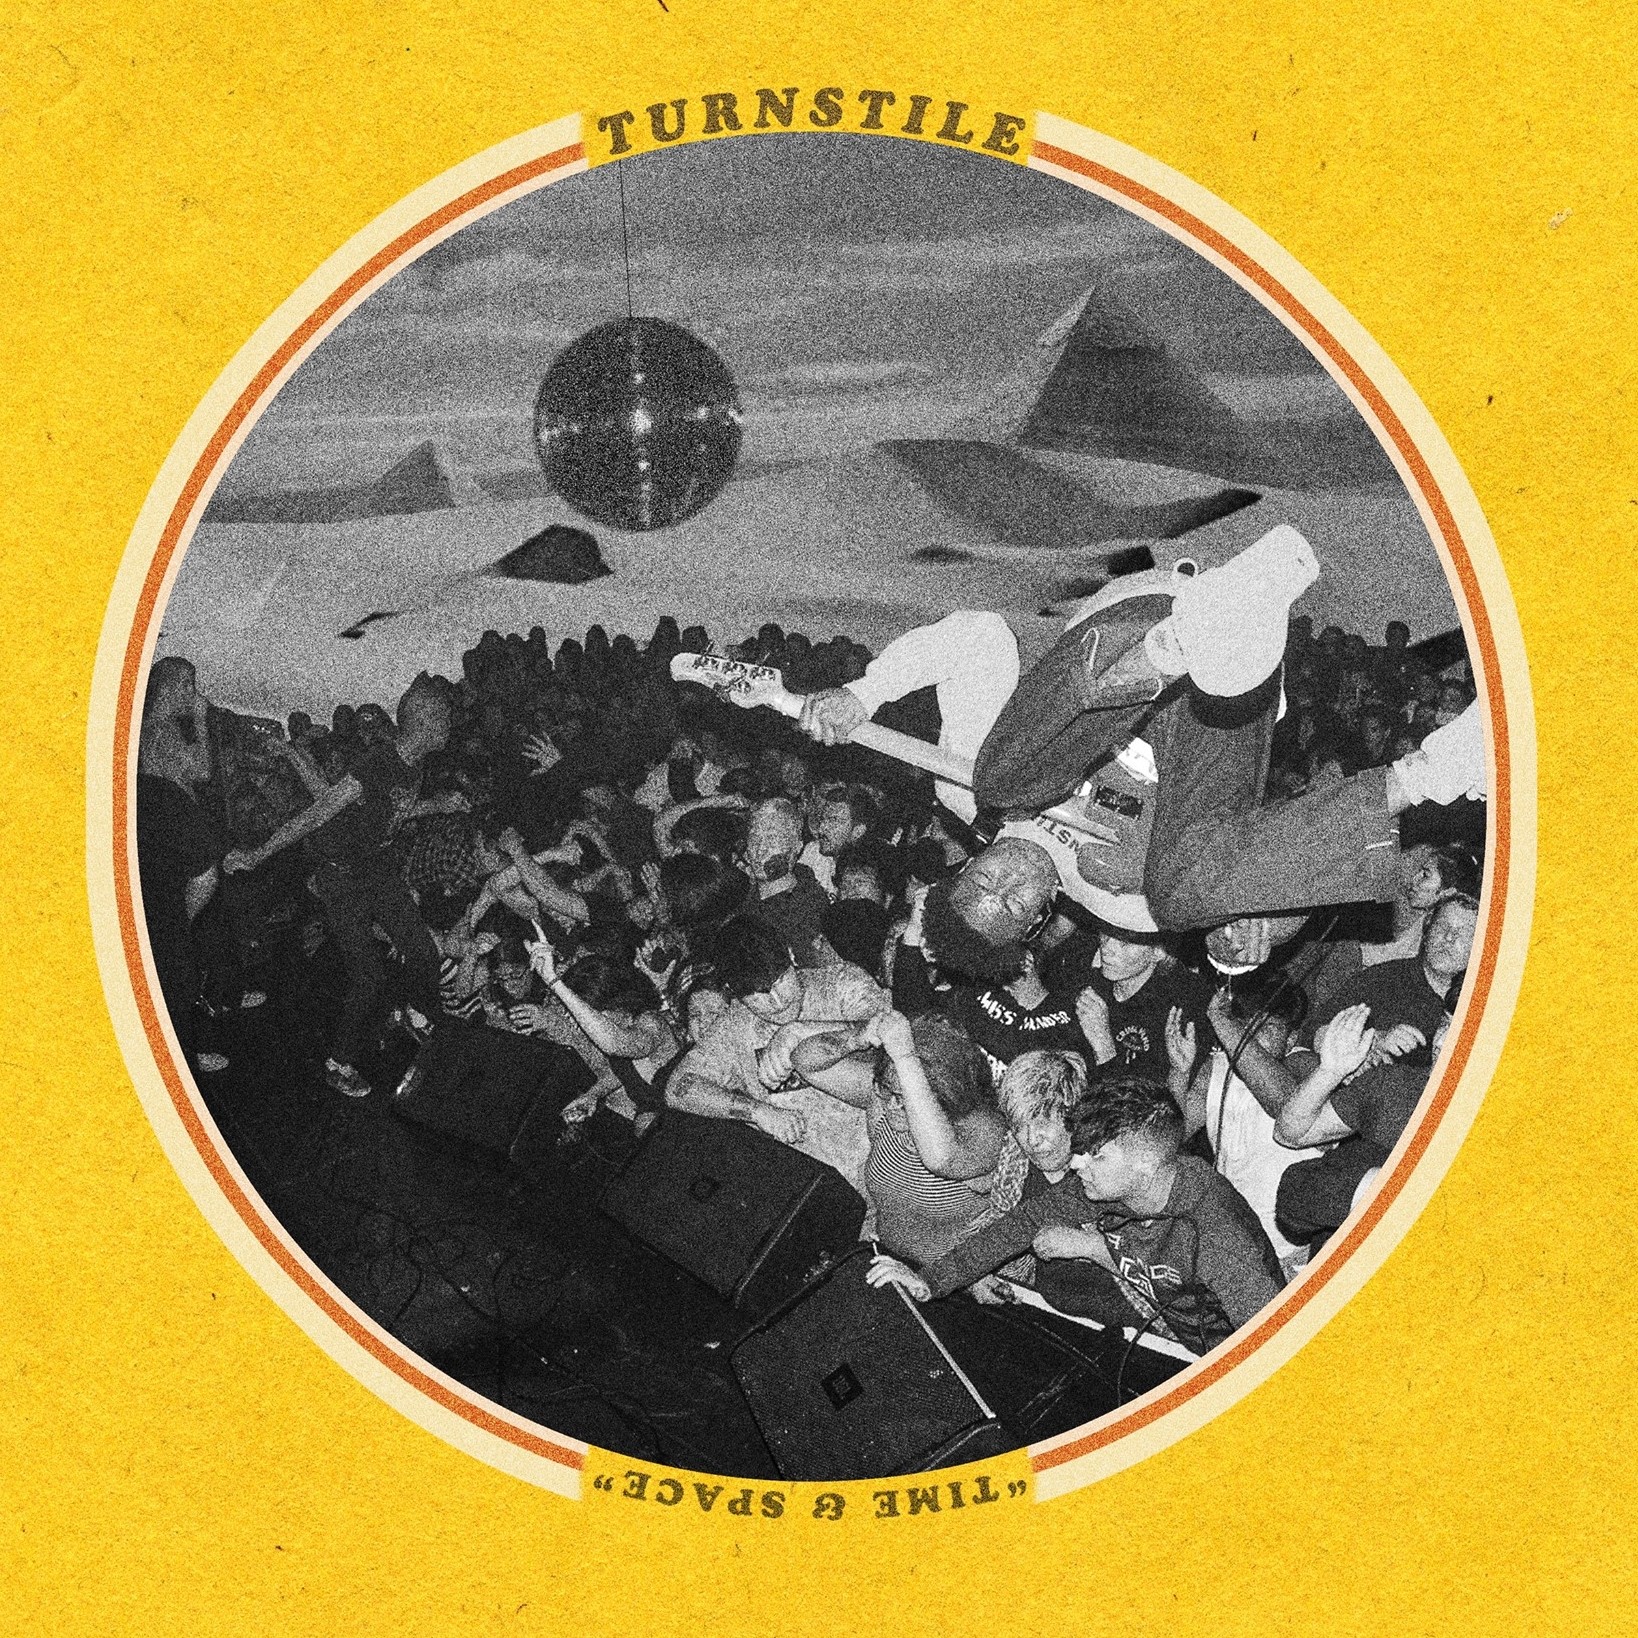 TURNSTILE - Moon cover 